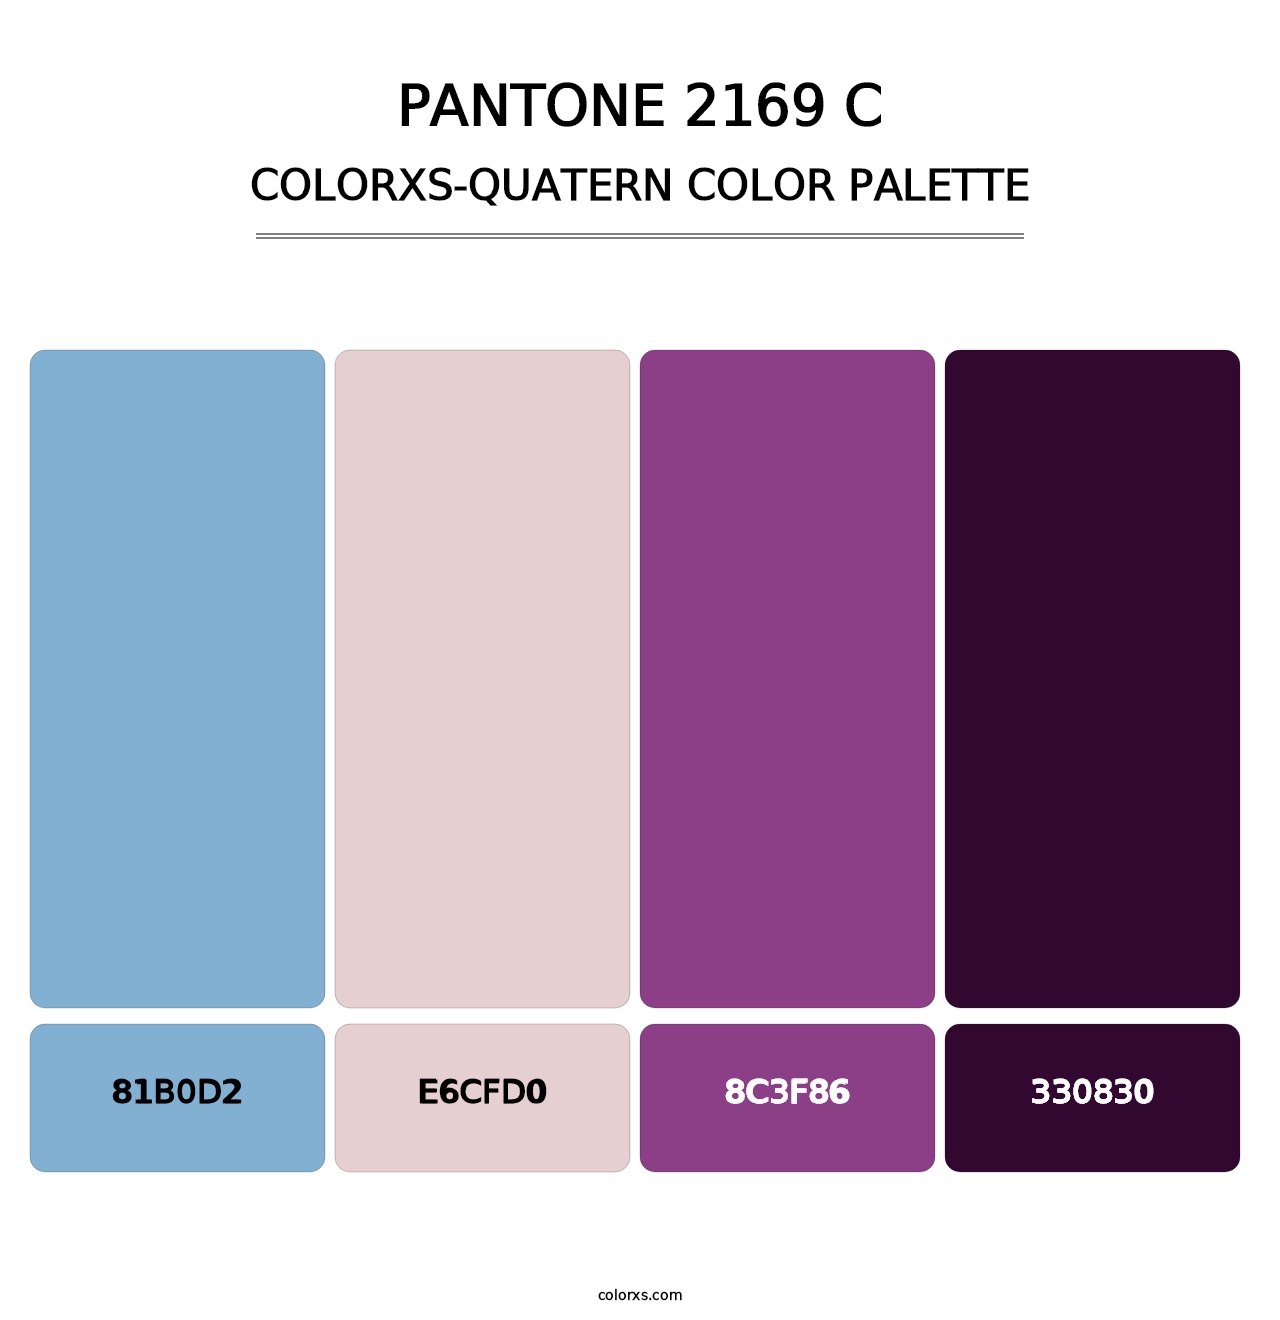 PANTONE 2169 C - Colorxs Quatern Palette